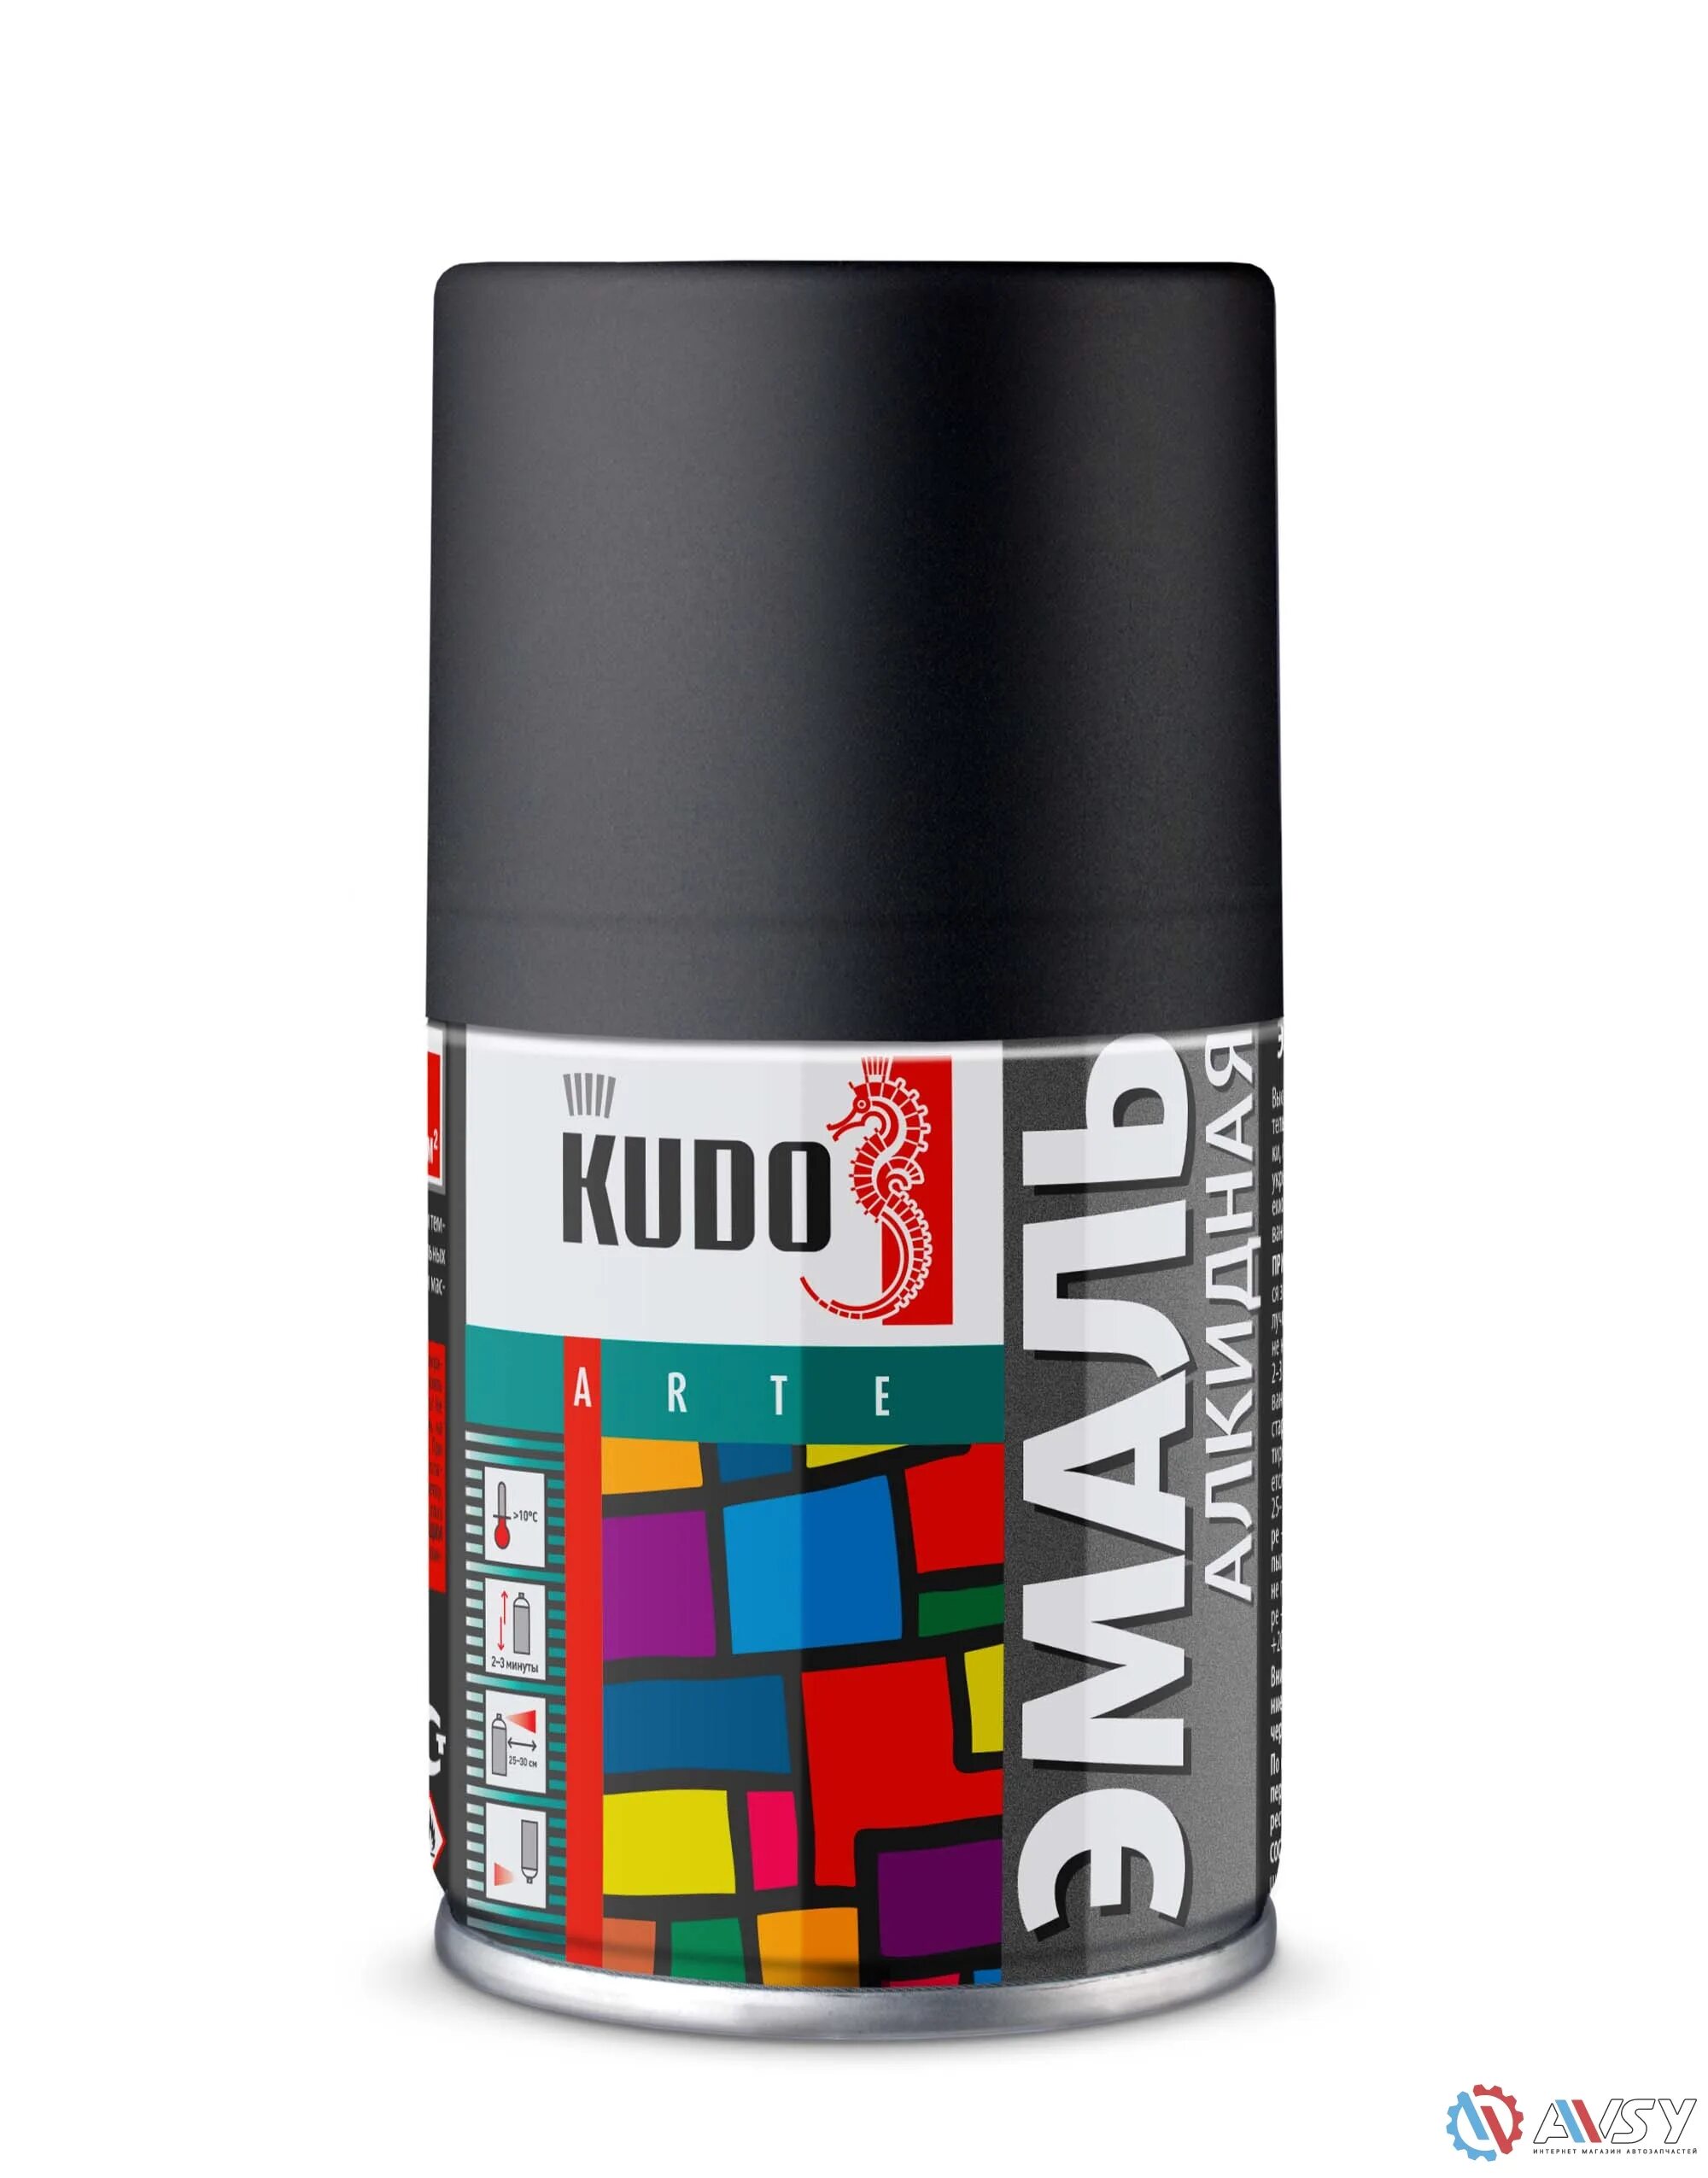 Kudo эмаль черная матовая. Эмаль ku-1102 Kudo черная матовая. Краска Kudo 1002. Ku1002 Kudo. Эмаль универсальная (черная глянцевая) Kudo 520мл.